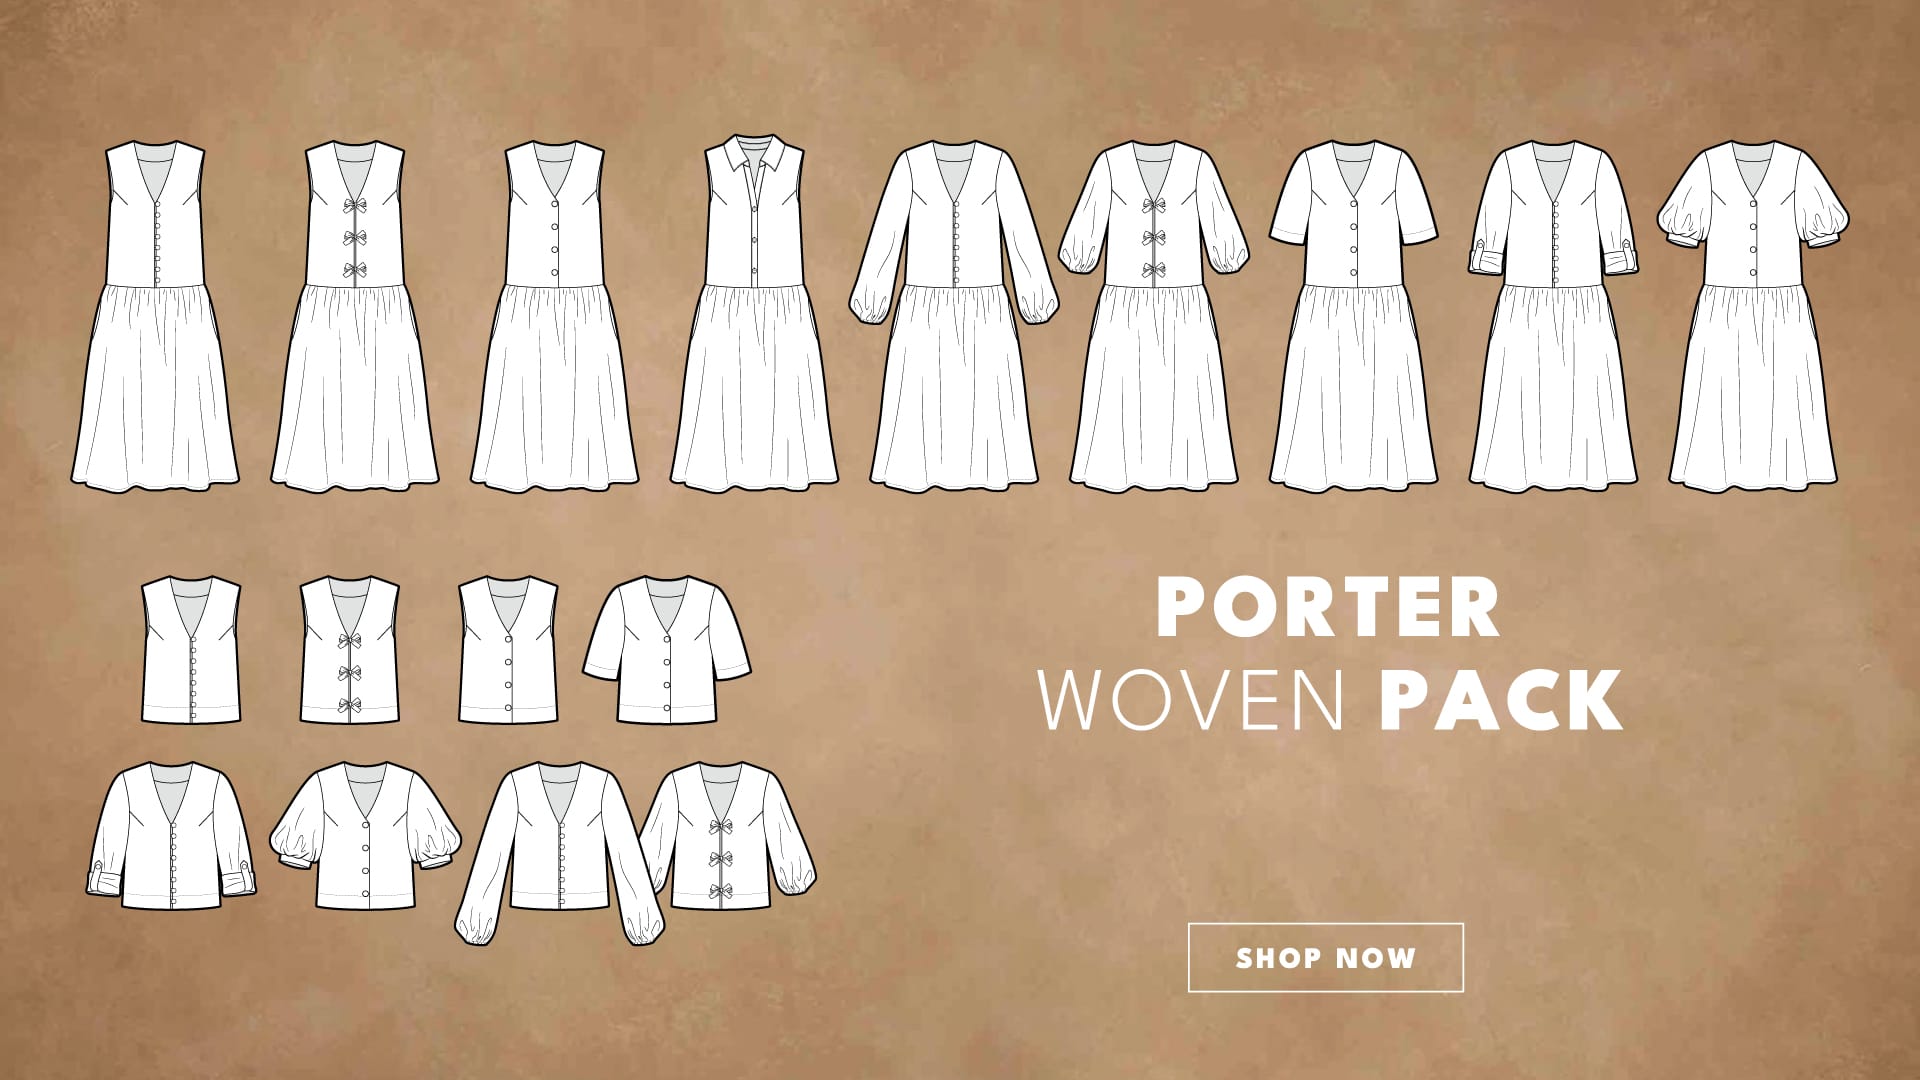 Porter Woven Pack